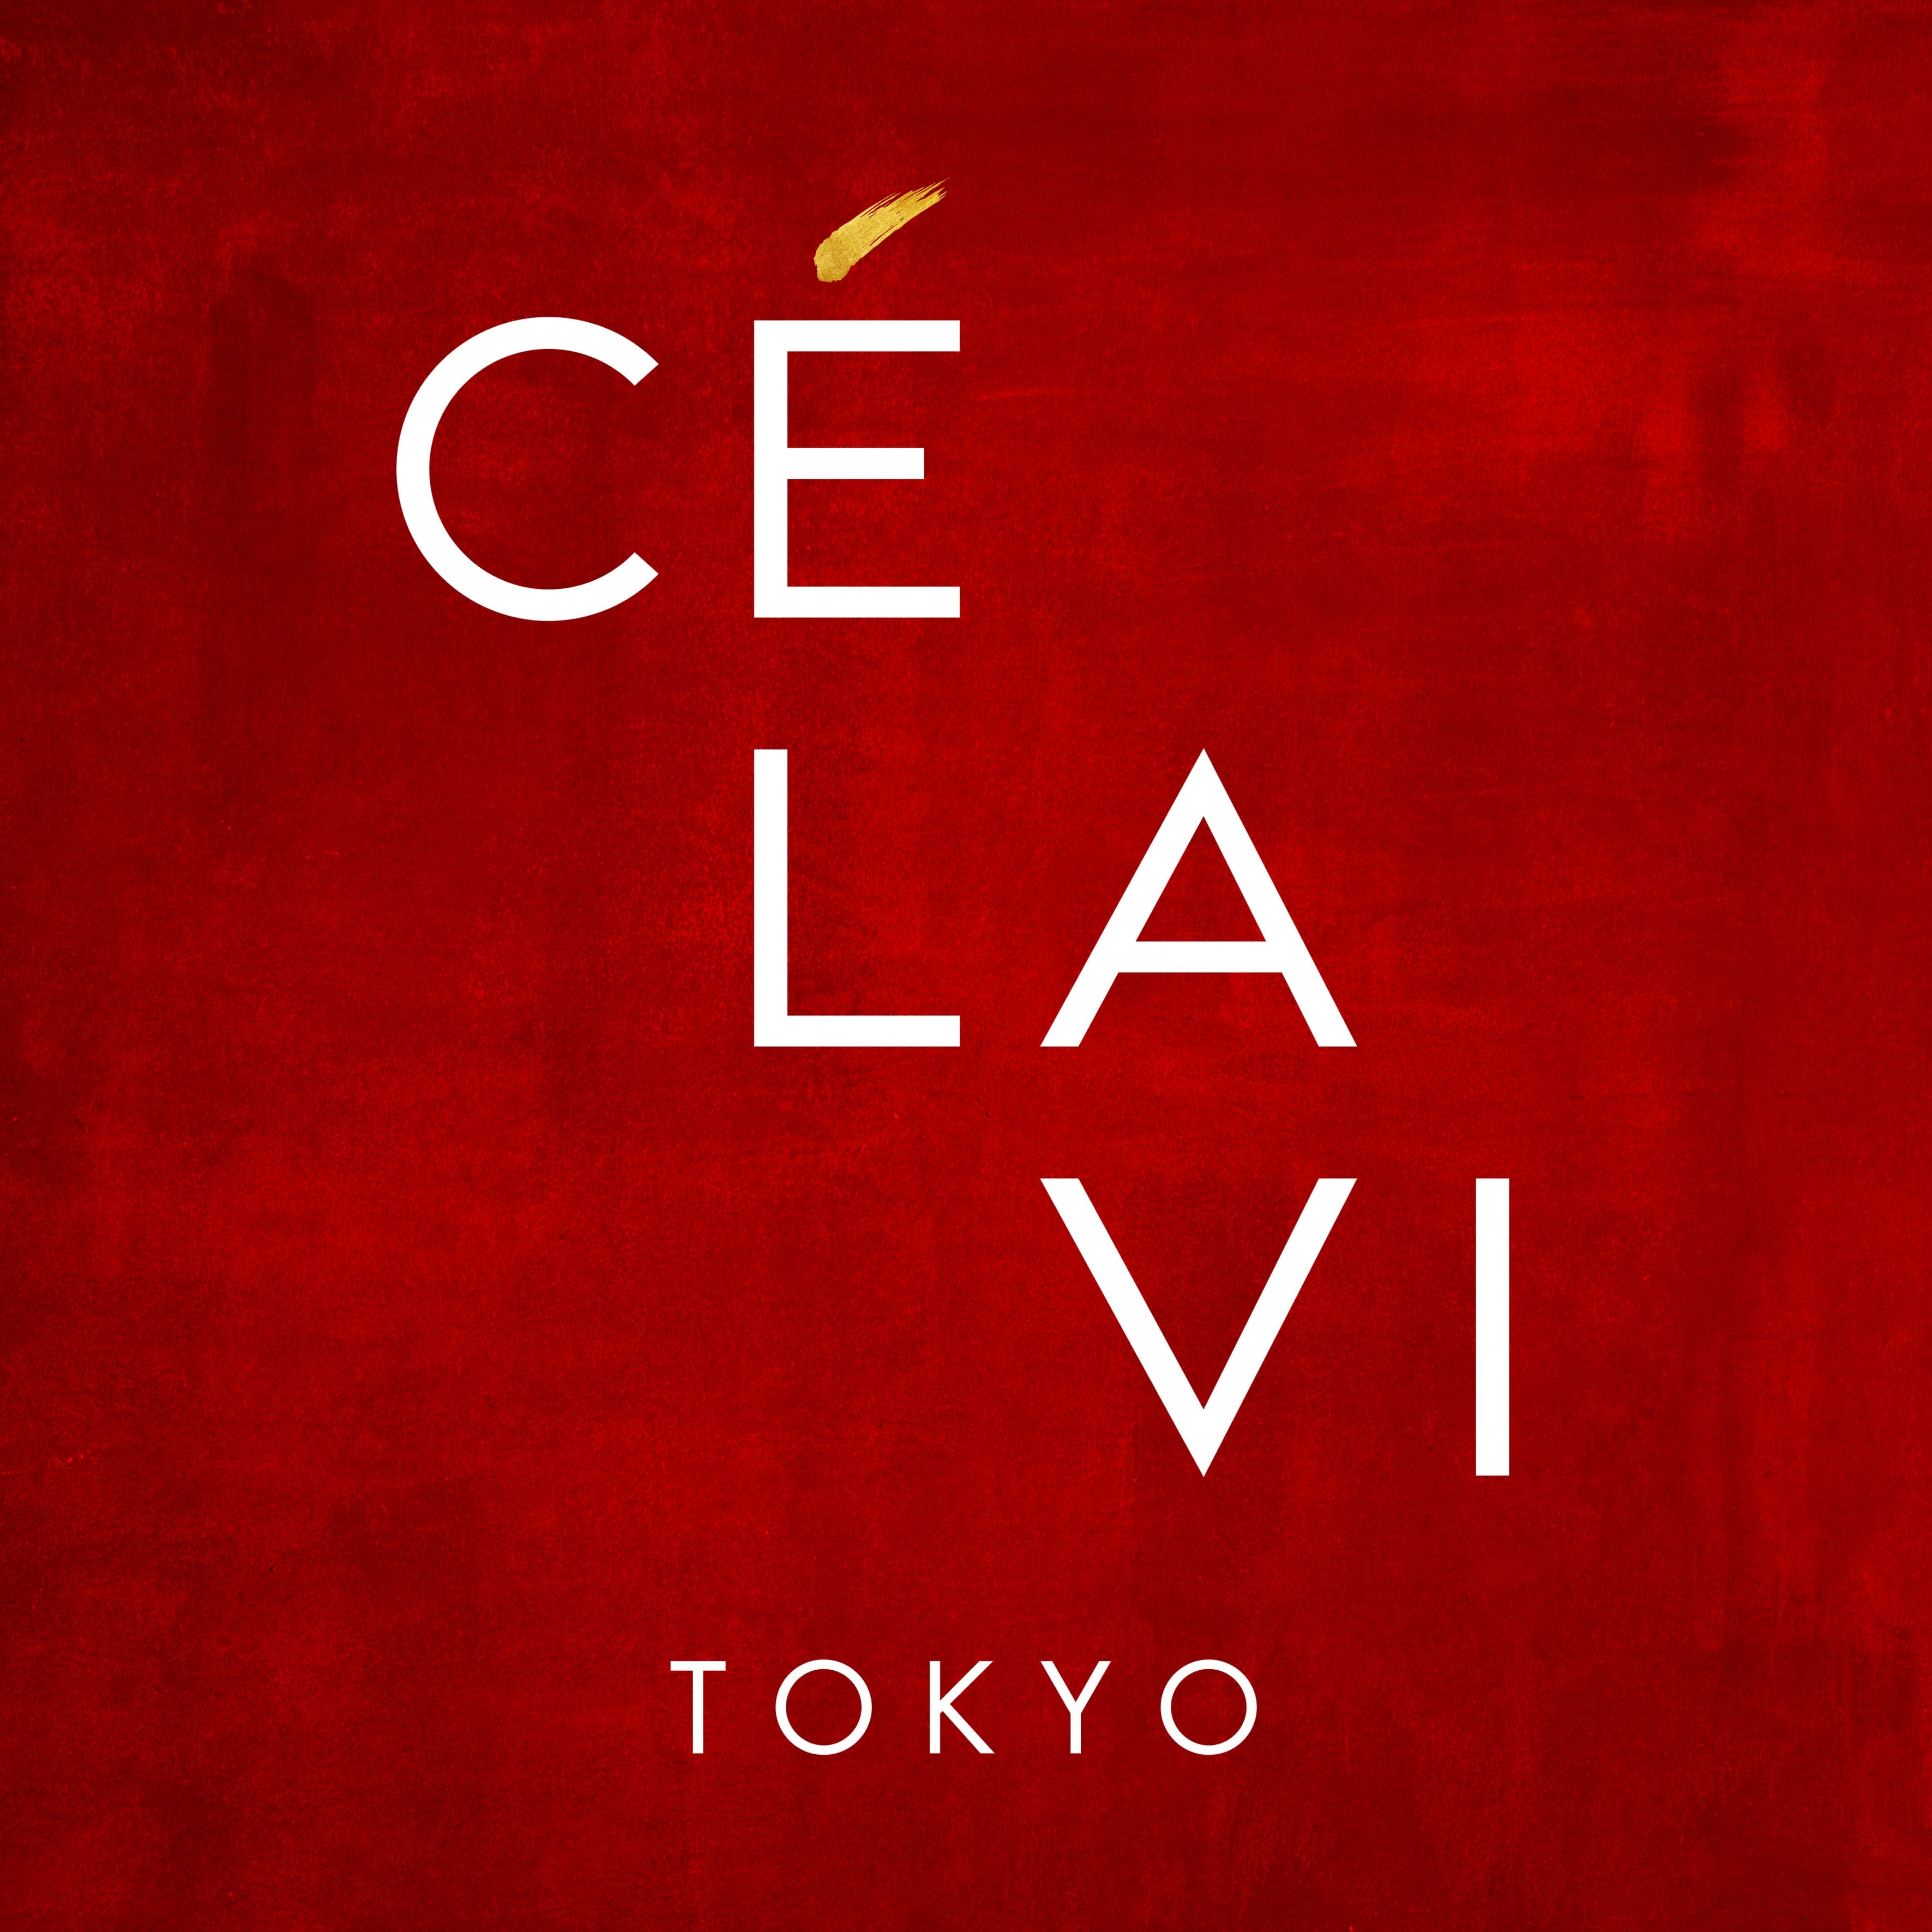 CÉ LA VI Tokyo 18階で“SALVATORE CUOMO 30th Anniversary” 開催決定！